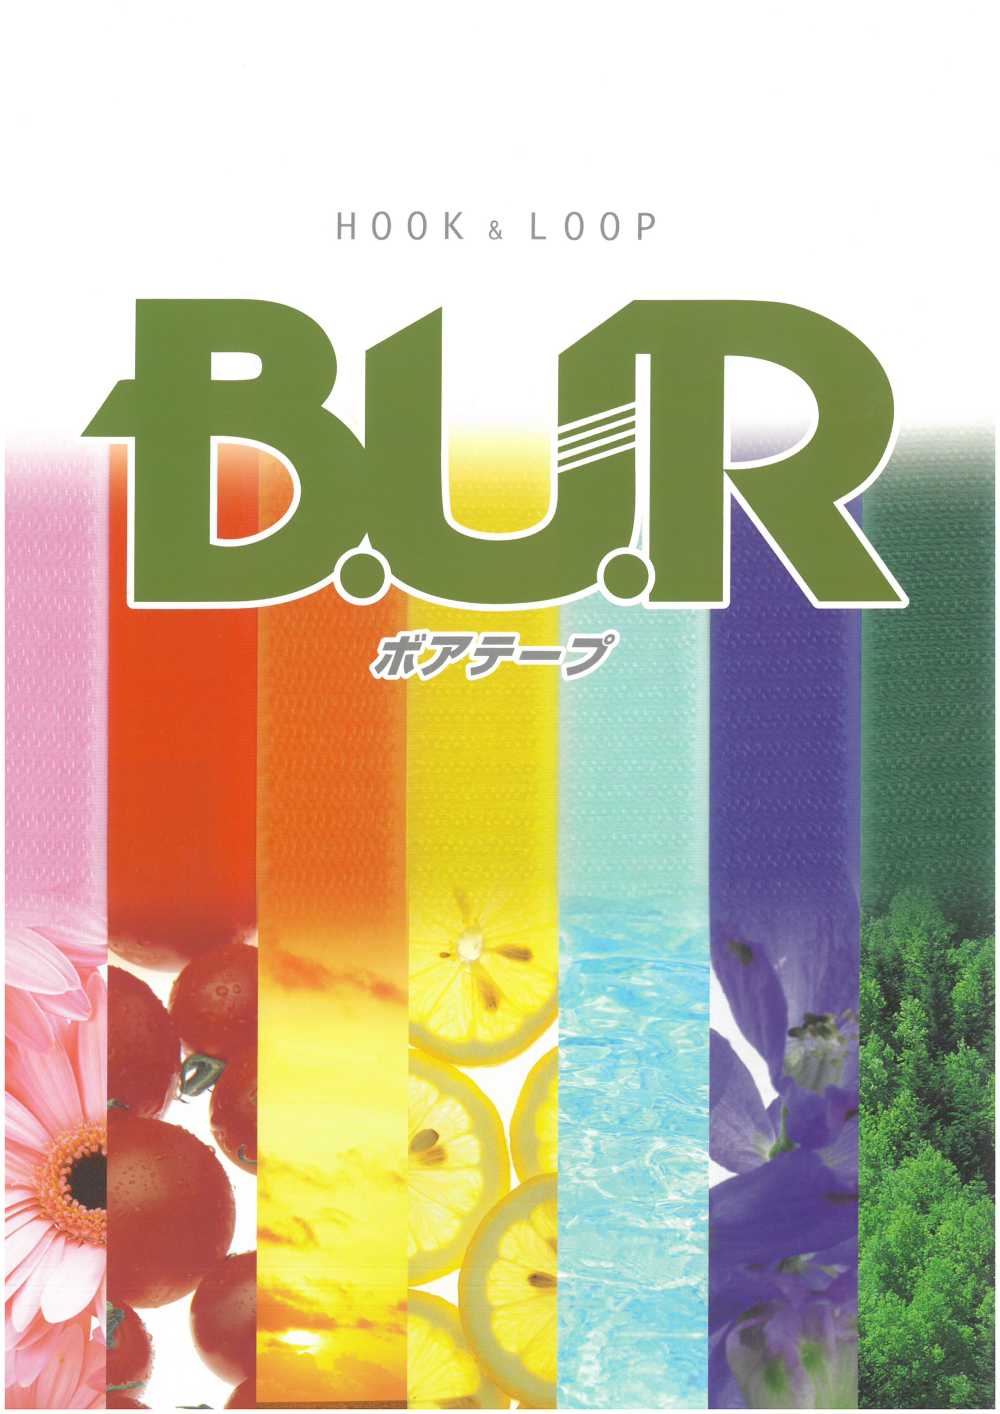 RBL Boa Tape Crochet Et Boucle Côté B (Type Boucle) En Nylon Avec Type Adhésif En Caoutchouc[Fermeture éclair] B.U.R.